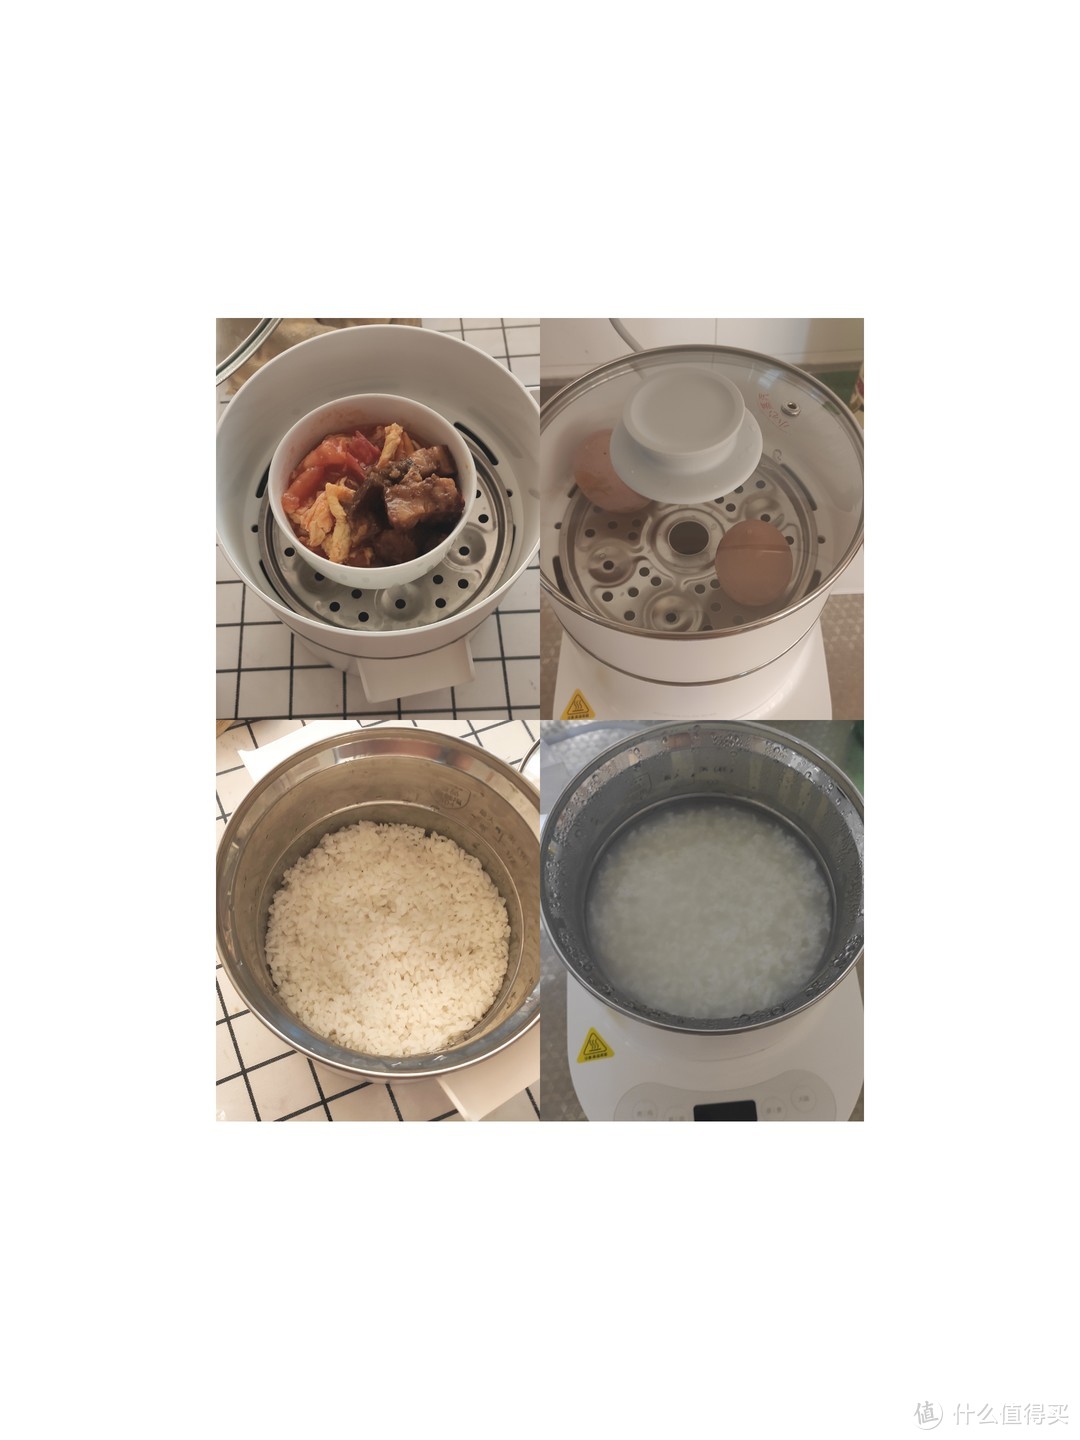 蒸米饭、煮粥、蒸蛋、热菜